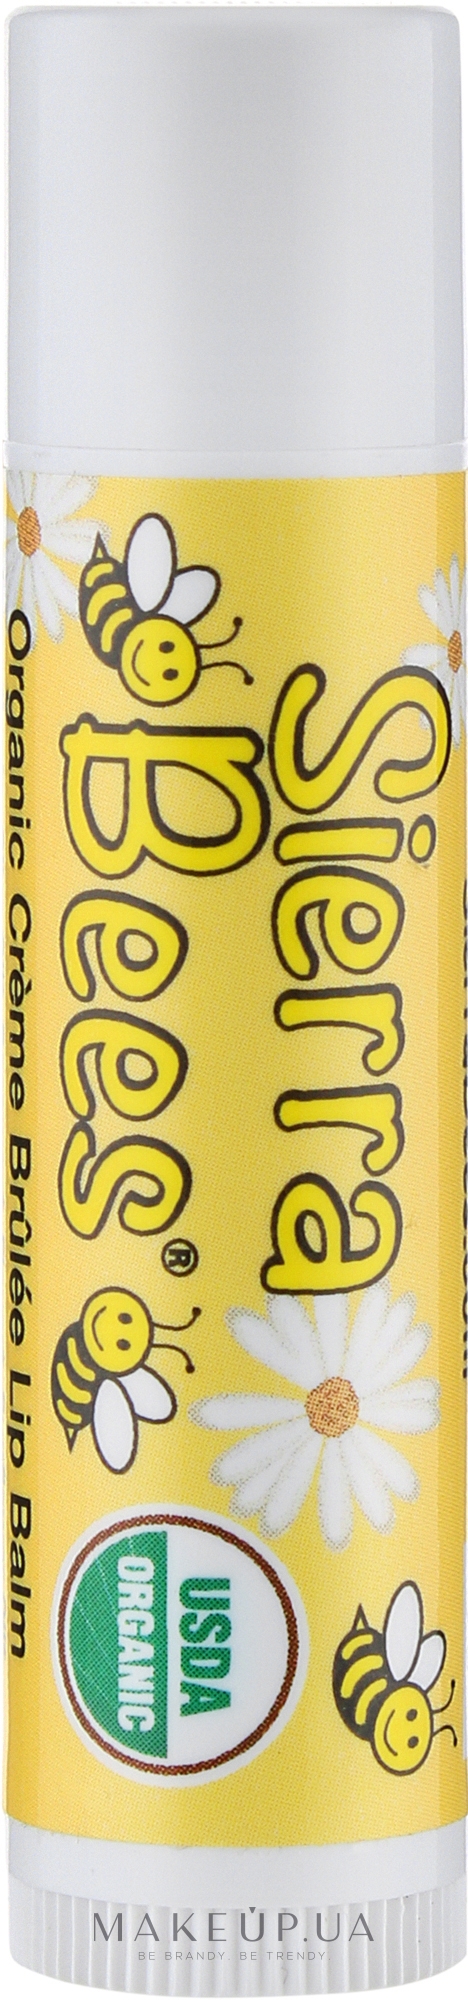 Бальзам для губ органический "Крем-брюле" - Sierra Bees Creme Brulee Organic Lip Balm — фото 4.25g